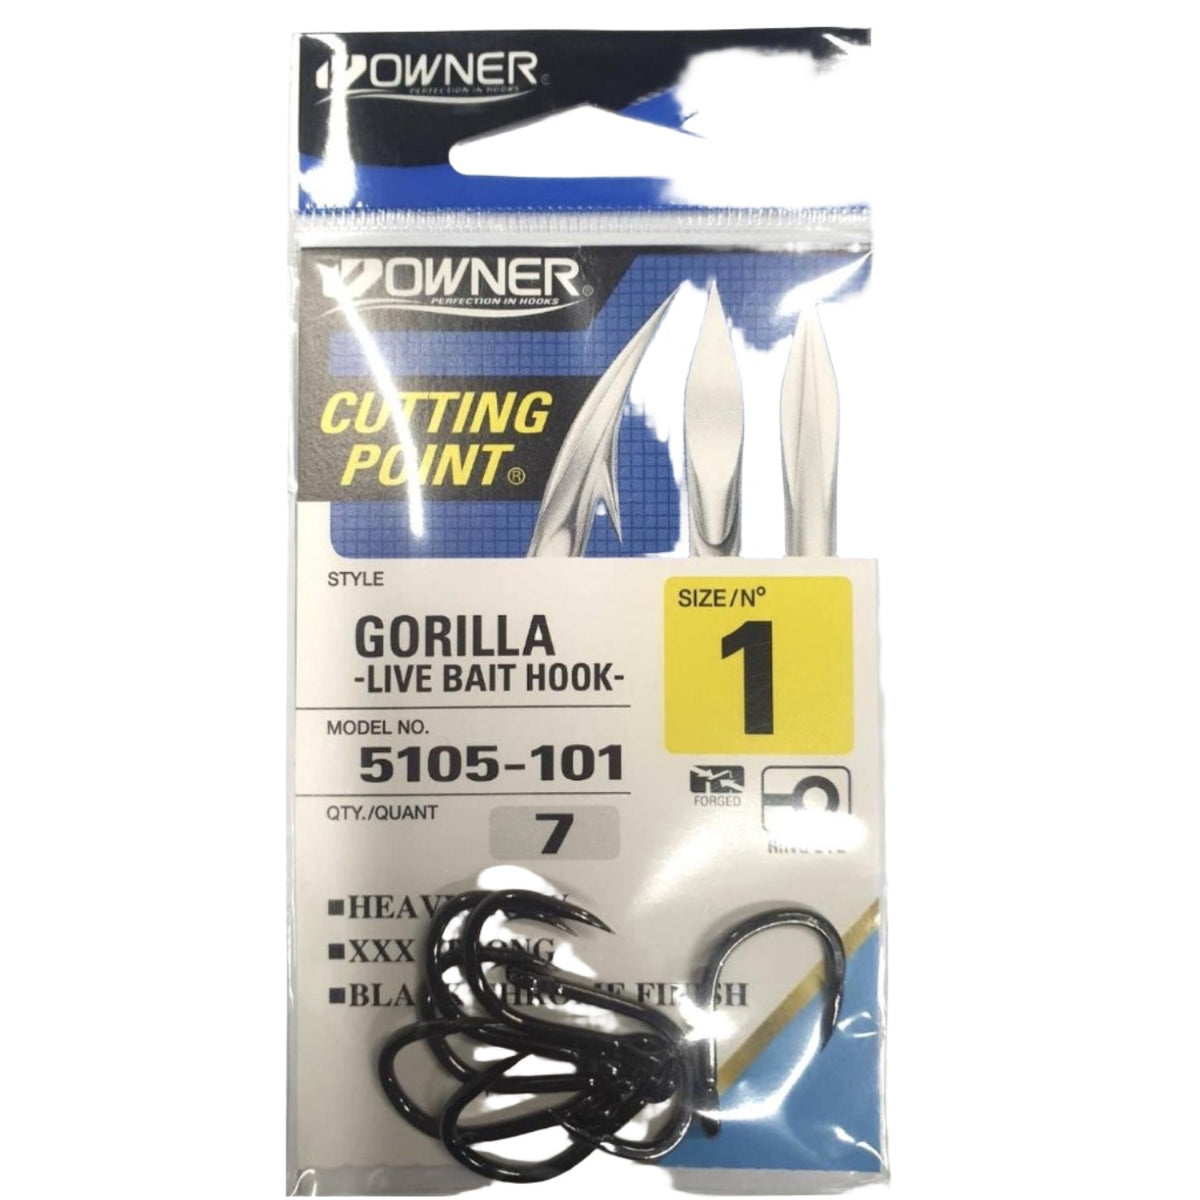 Owner Gorilla Live Bait Hooks- 5105